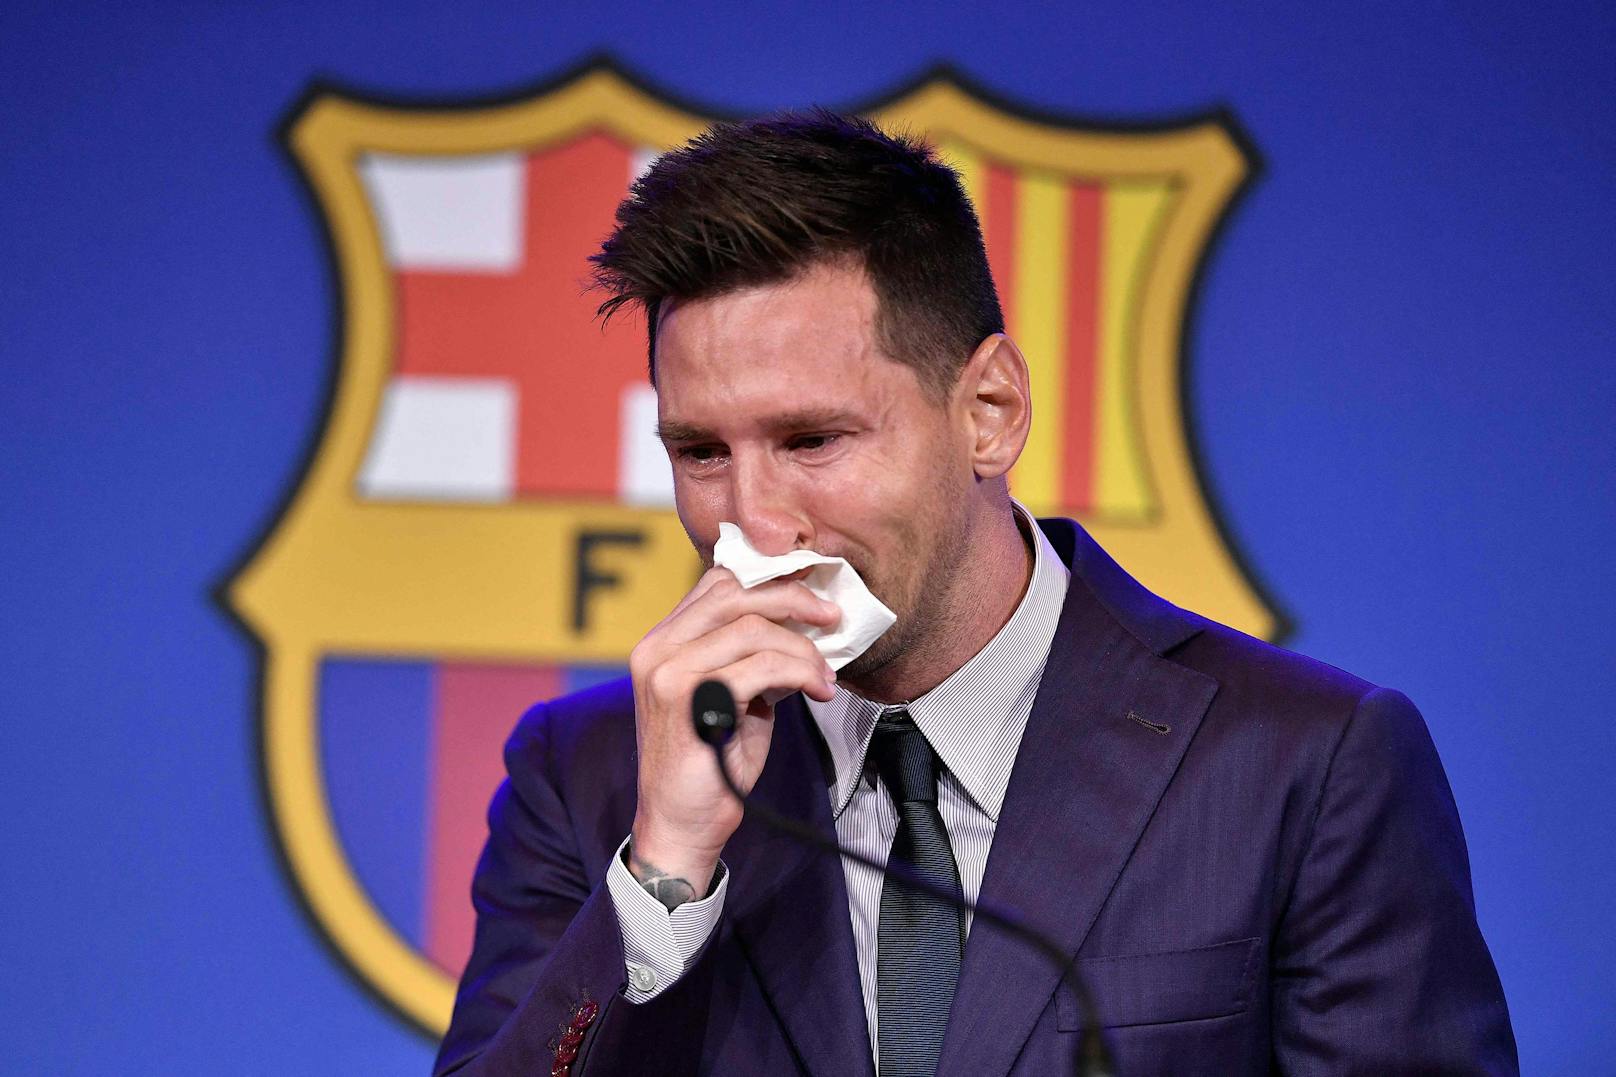 Lionel Messi weint bereits vor seinen Abschiedsworten an die Fans.